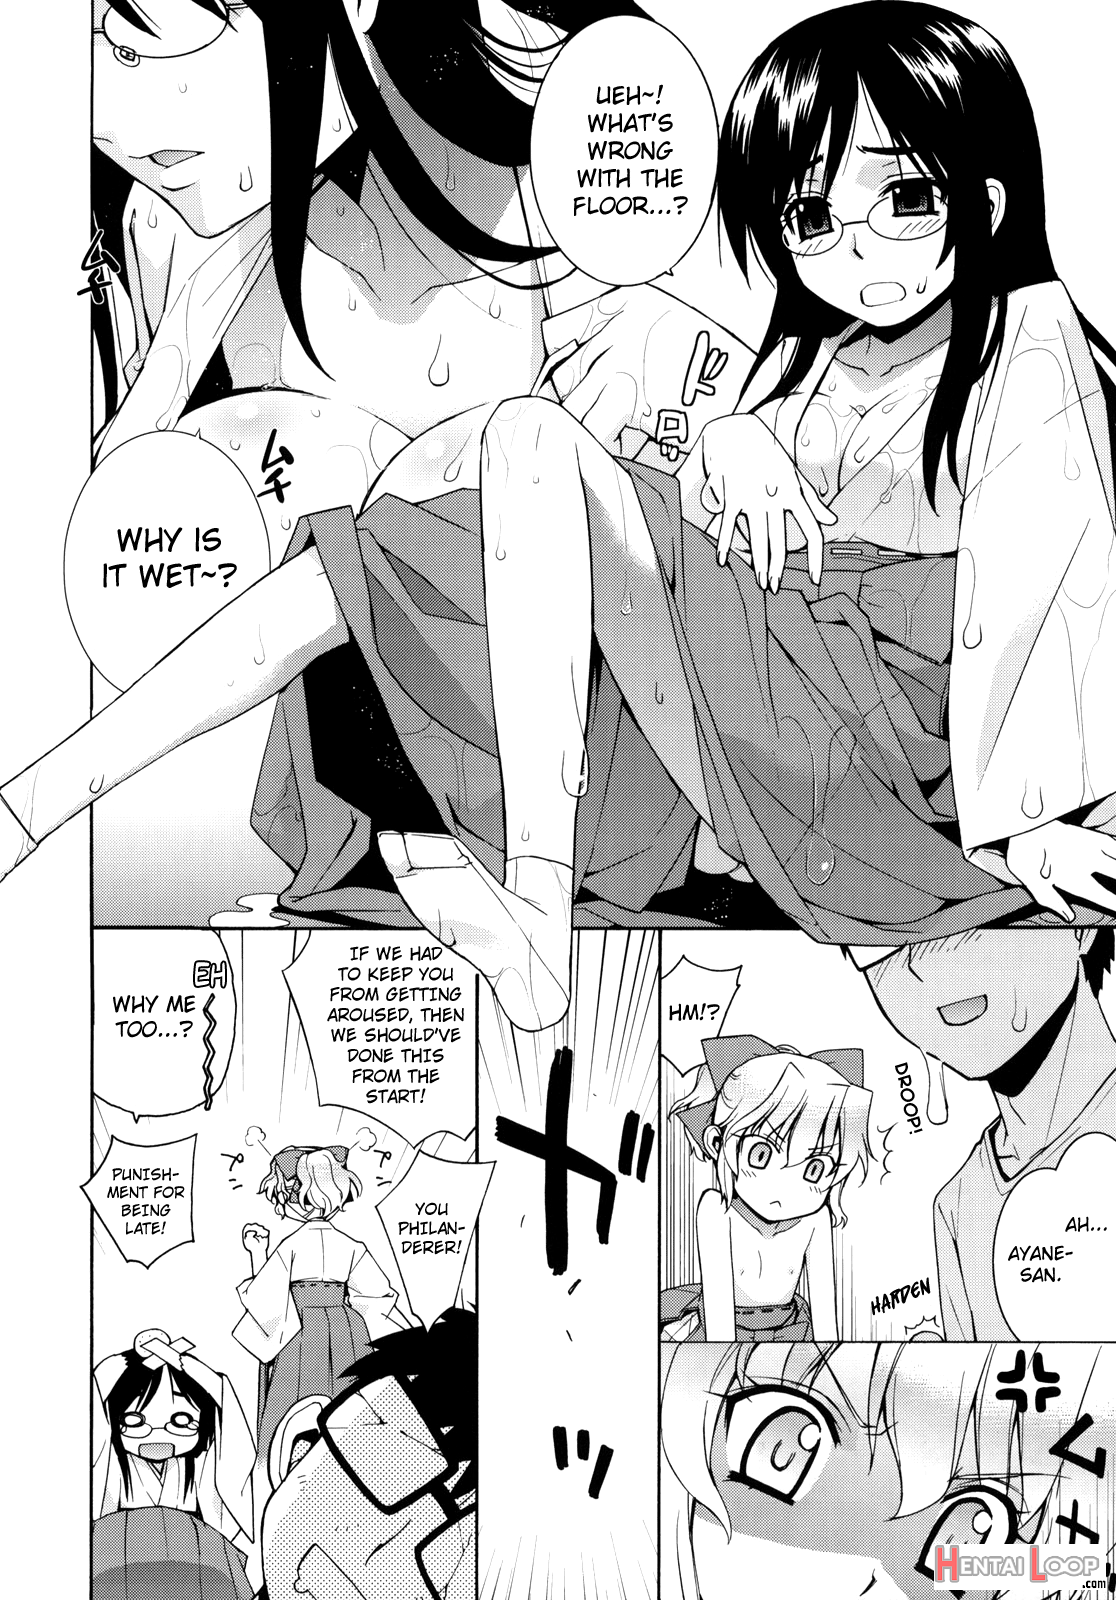 Kanara-sama No Nichijou 2 page 27